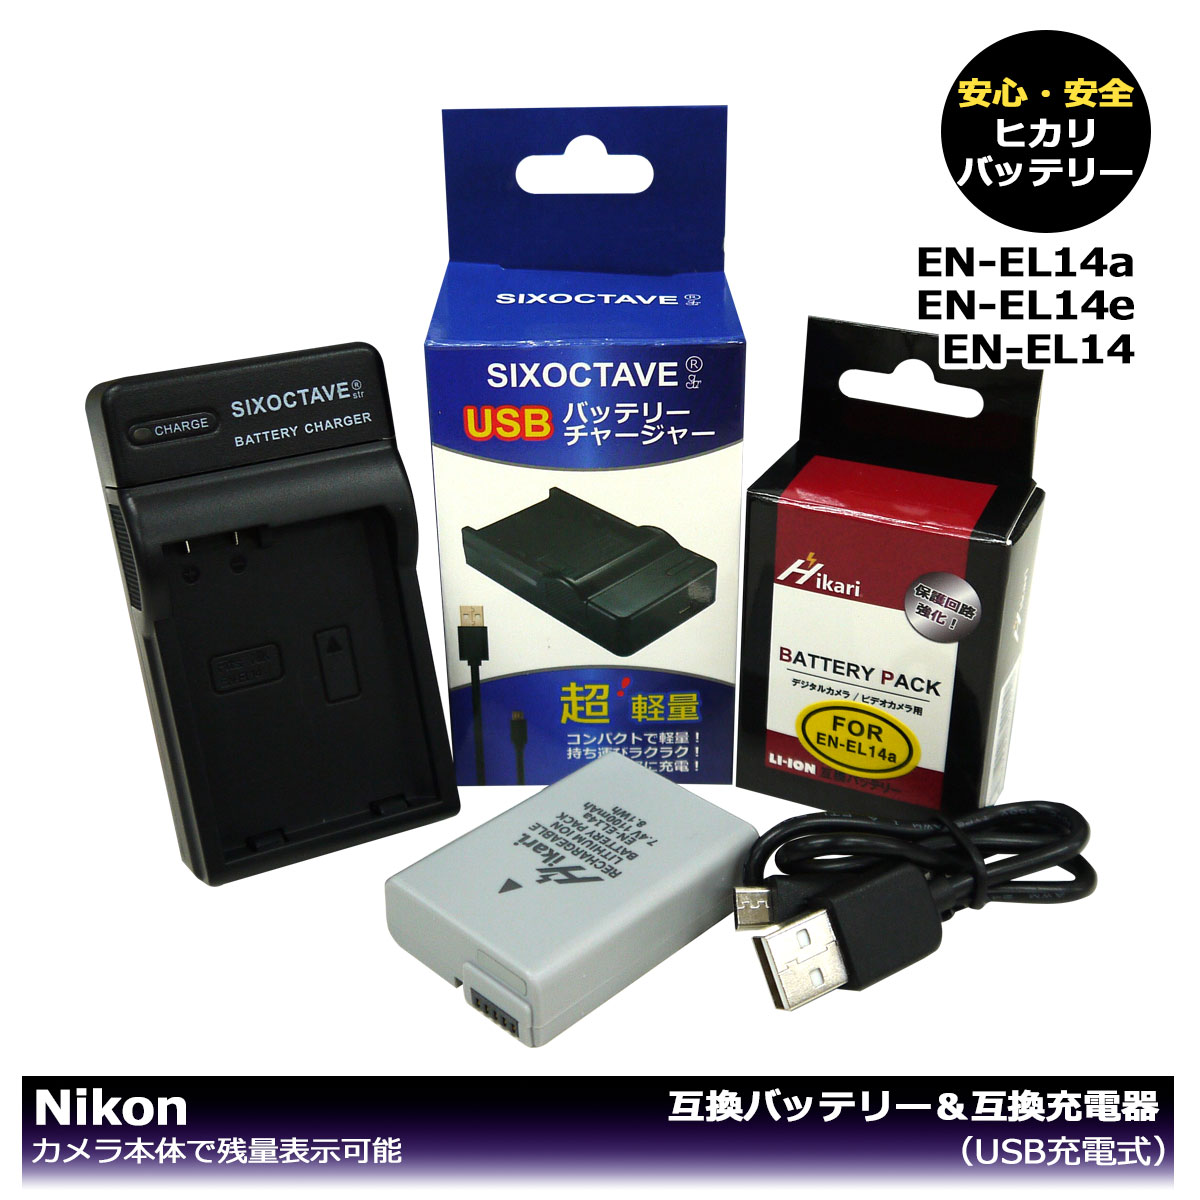 EN-EL14a EN-EL14 【大容量シリーズ】ニコン 互換バッテリー 1個と （USB充電式）互換チャージャー 1個の2点セット カメラ本体で残量表示可能 クールピクス P7000 P7100 P7700 P7800 P8000 D3100 D3200 D3300 D3400 D3500 D5100 D5200 D5300 D5500 D5600 Df